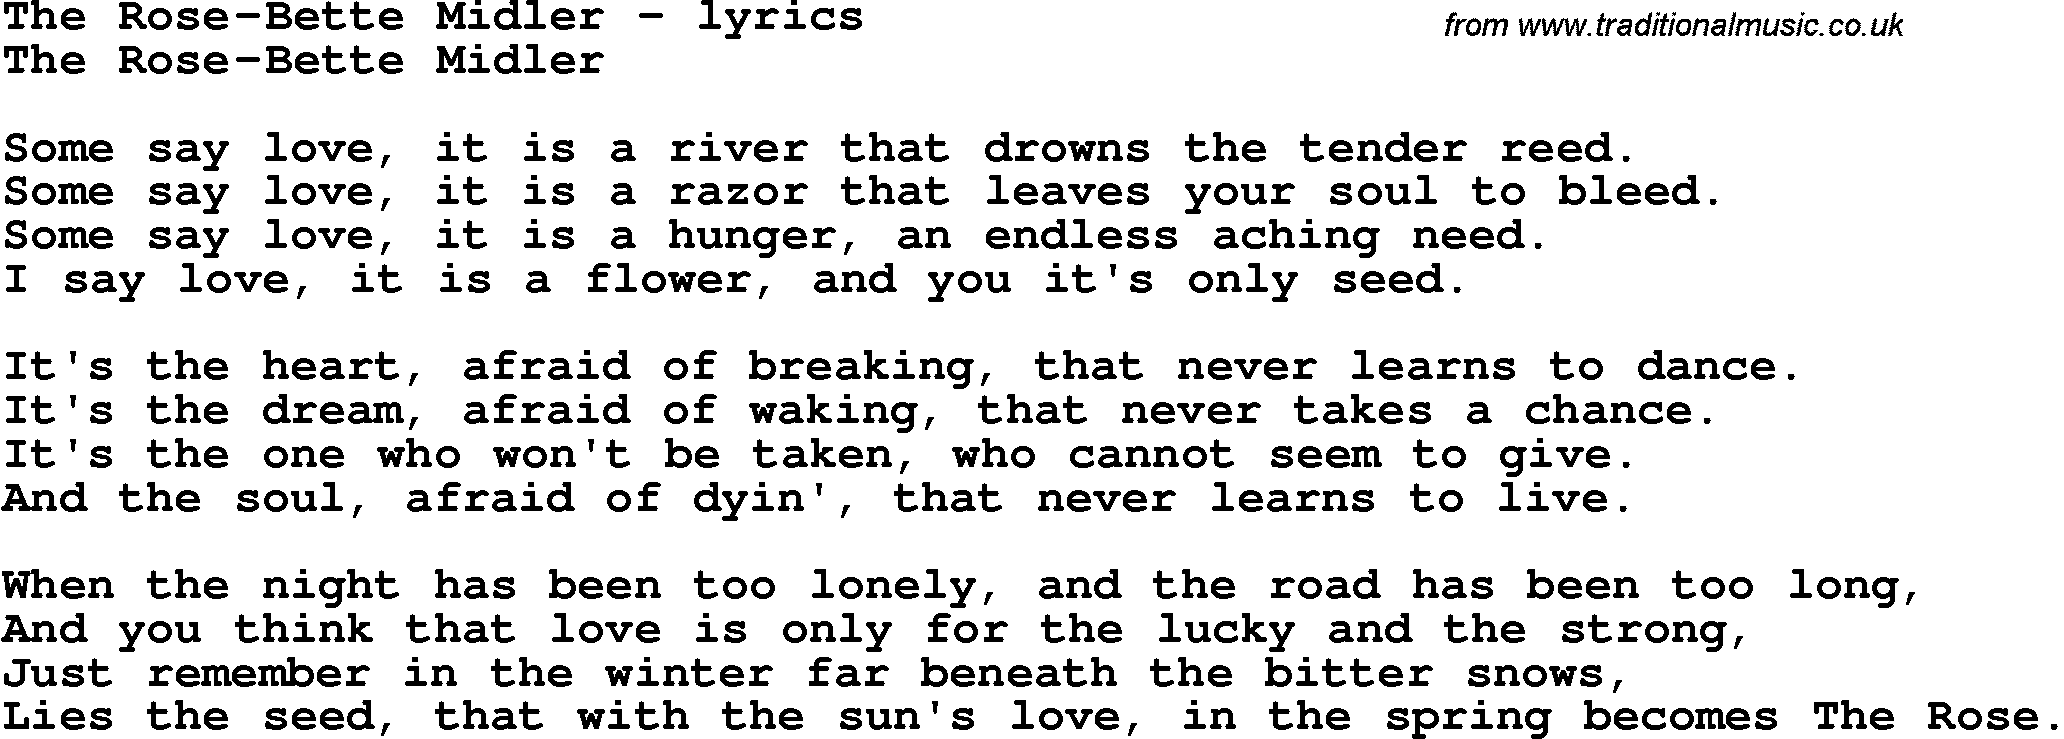 Love Song Lyrics for: The Rose-Bette Midler